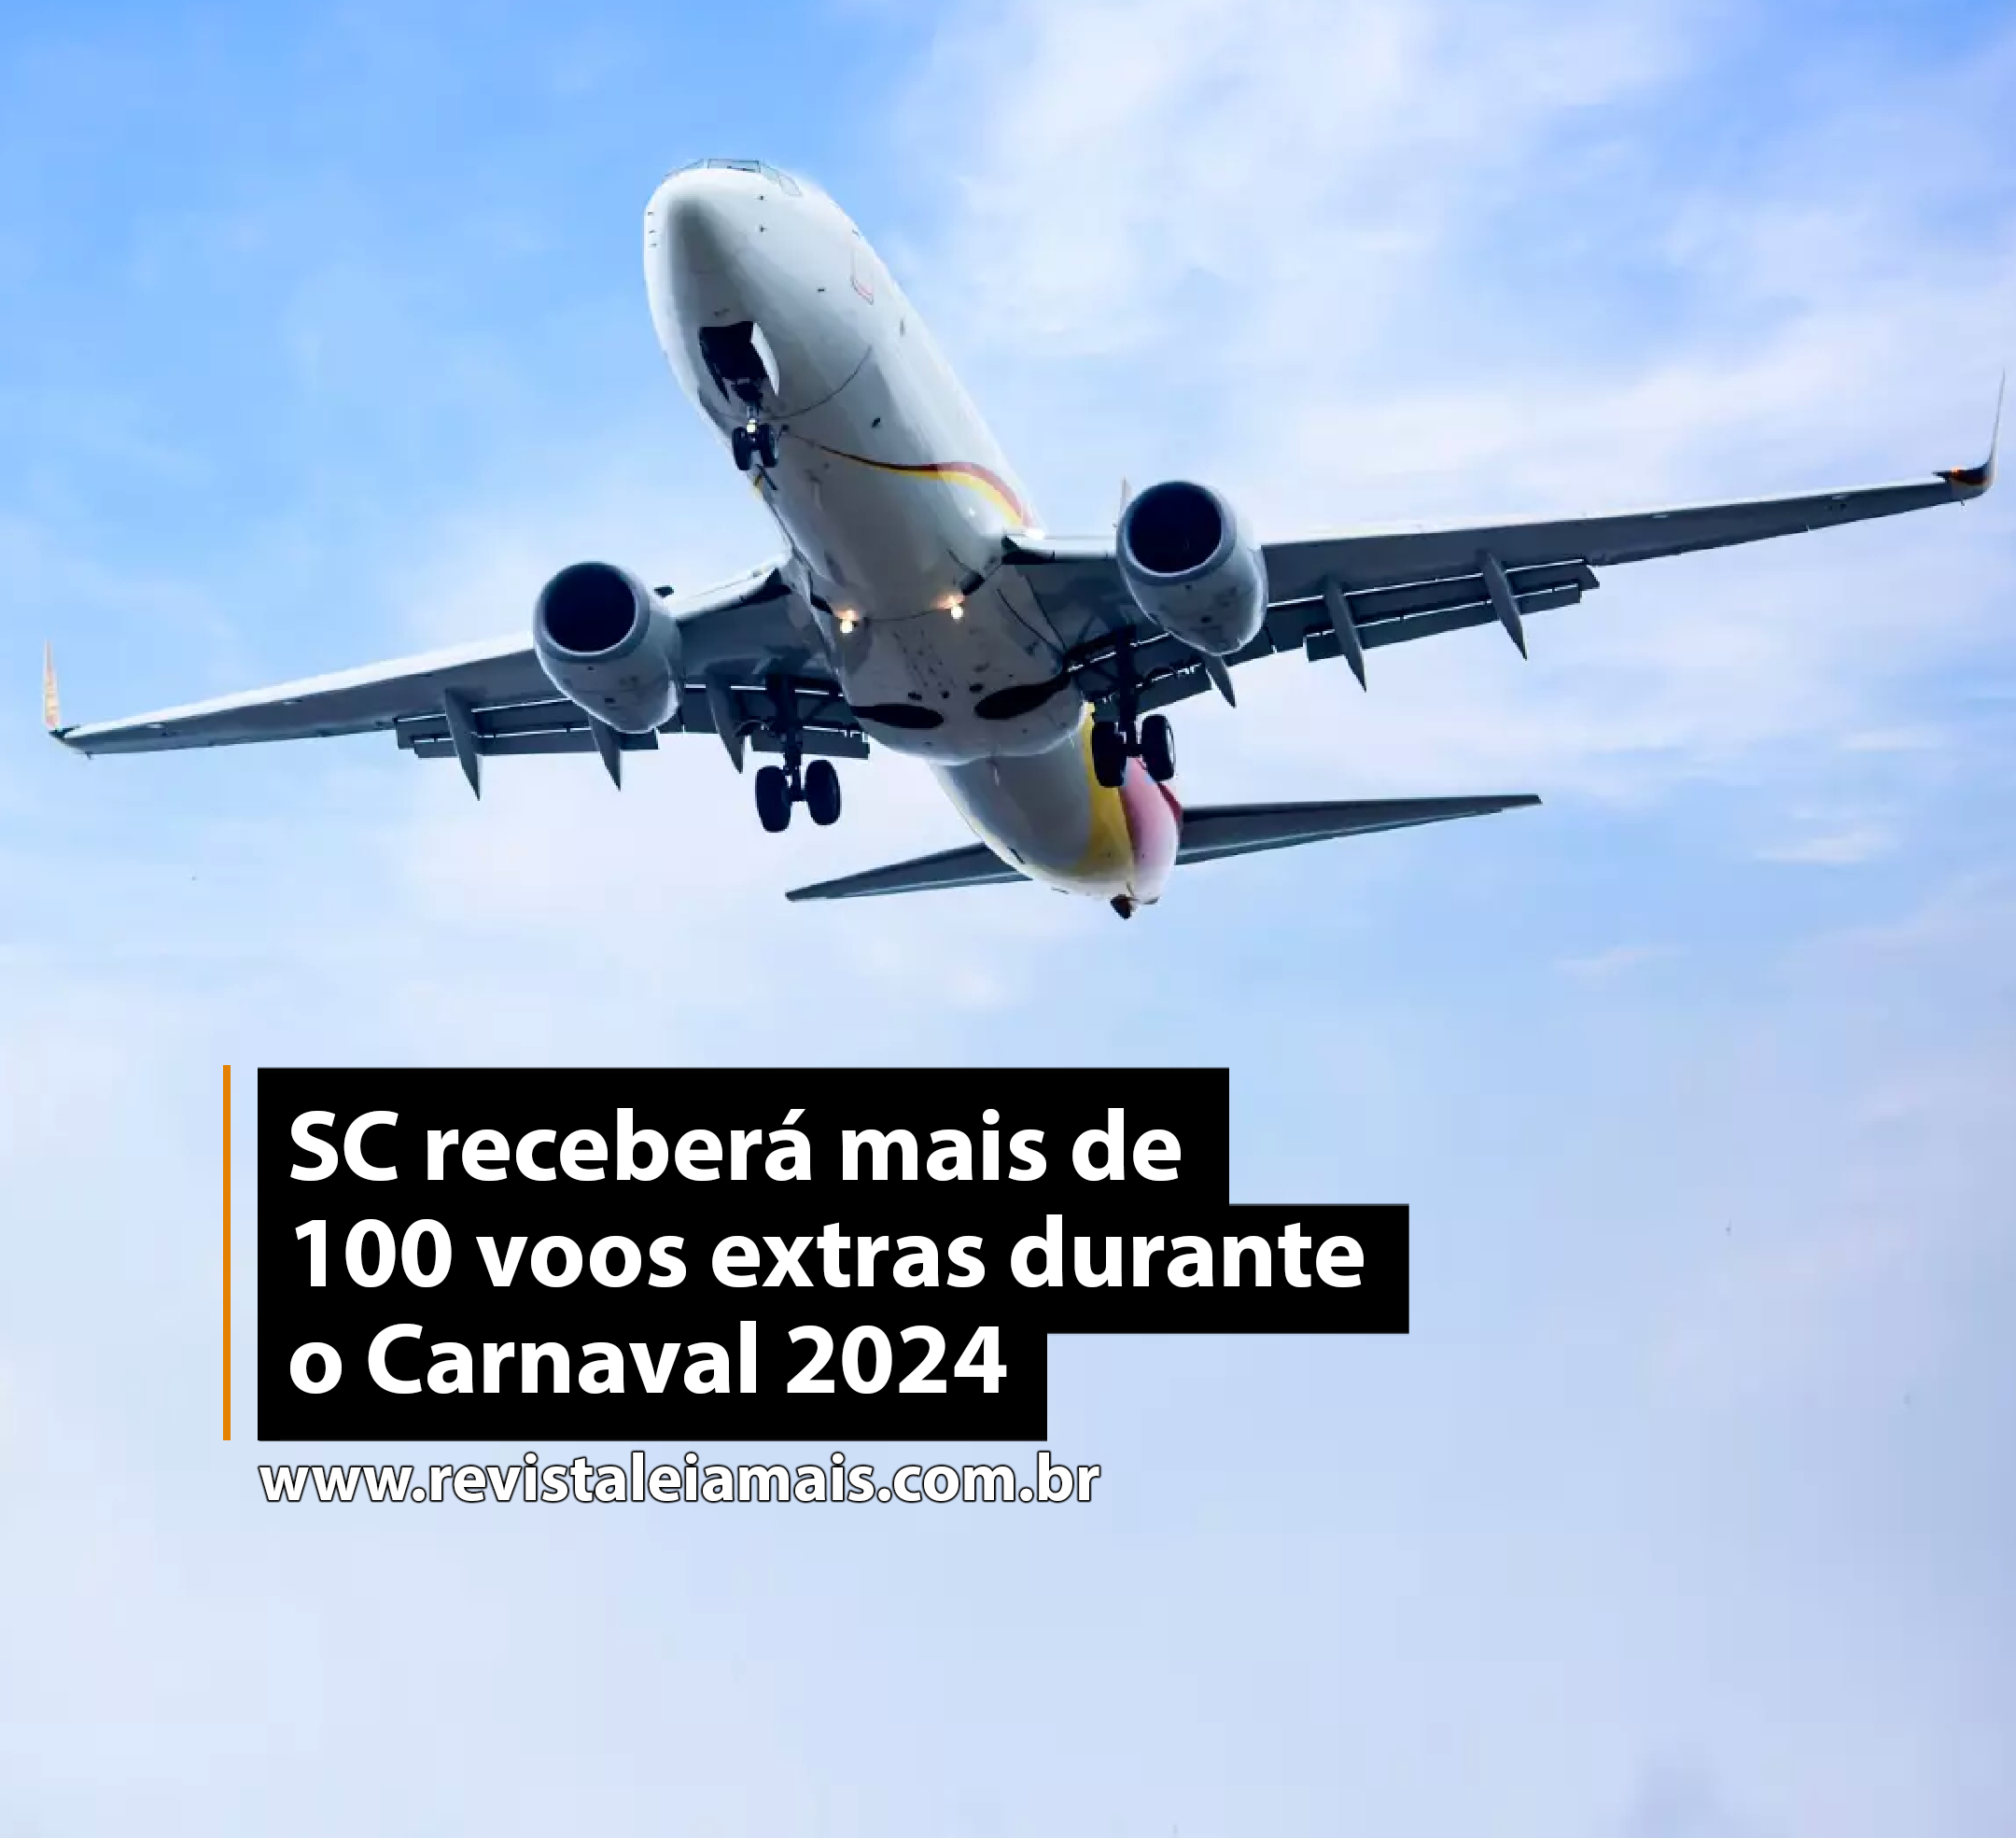 SC receberá mais de 100 voos extras durante o Carnaval 2024